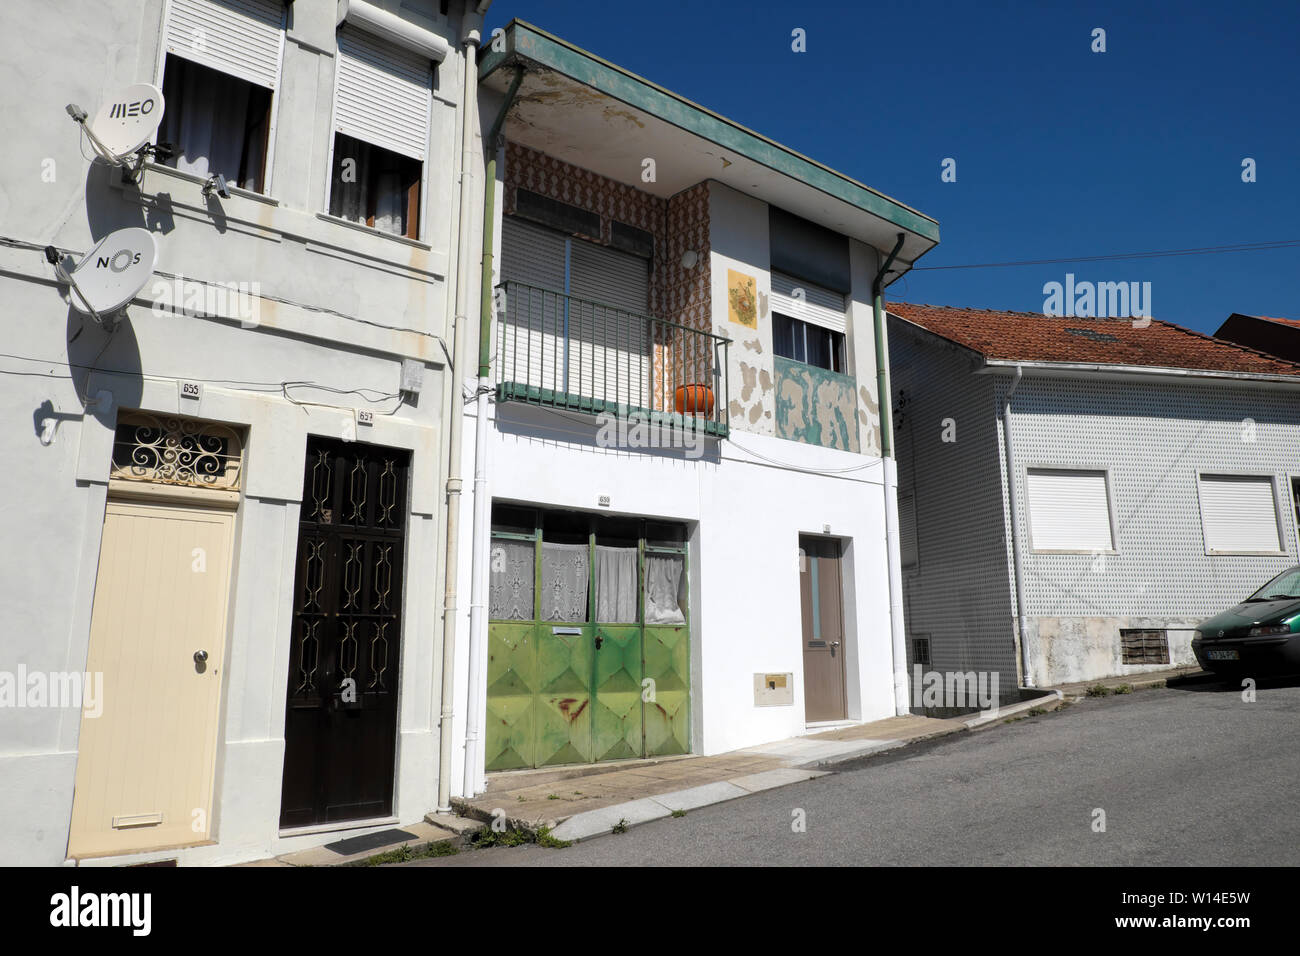 Vue avant d'immeubles à appartements de campanha Porto Porto Portugal Europe KATHY DEWITT Banque D'Images